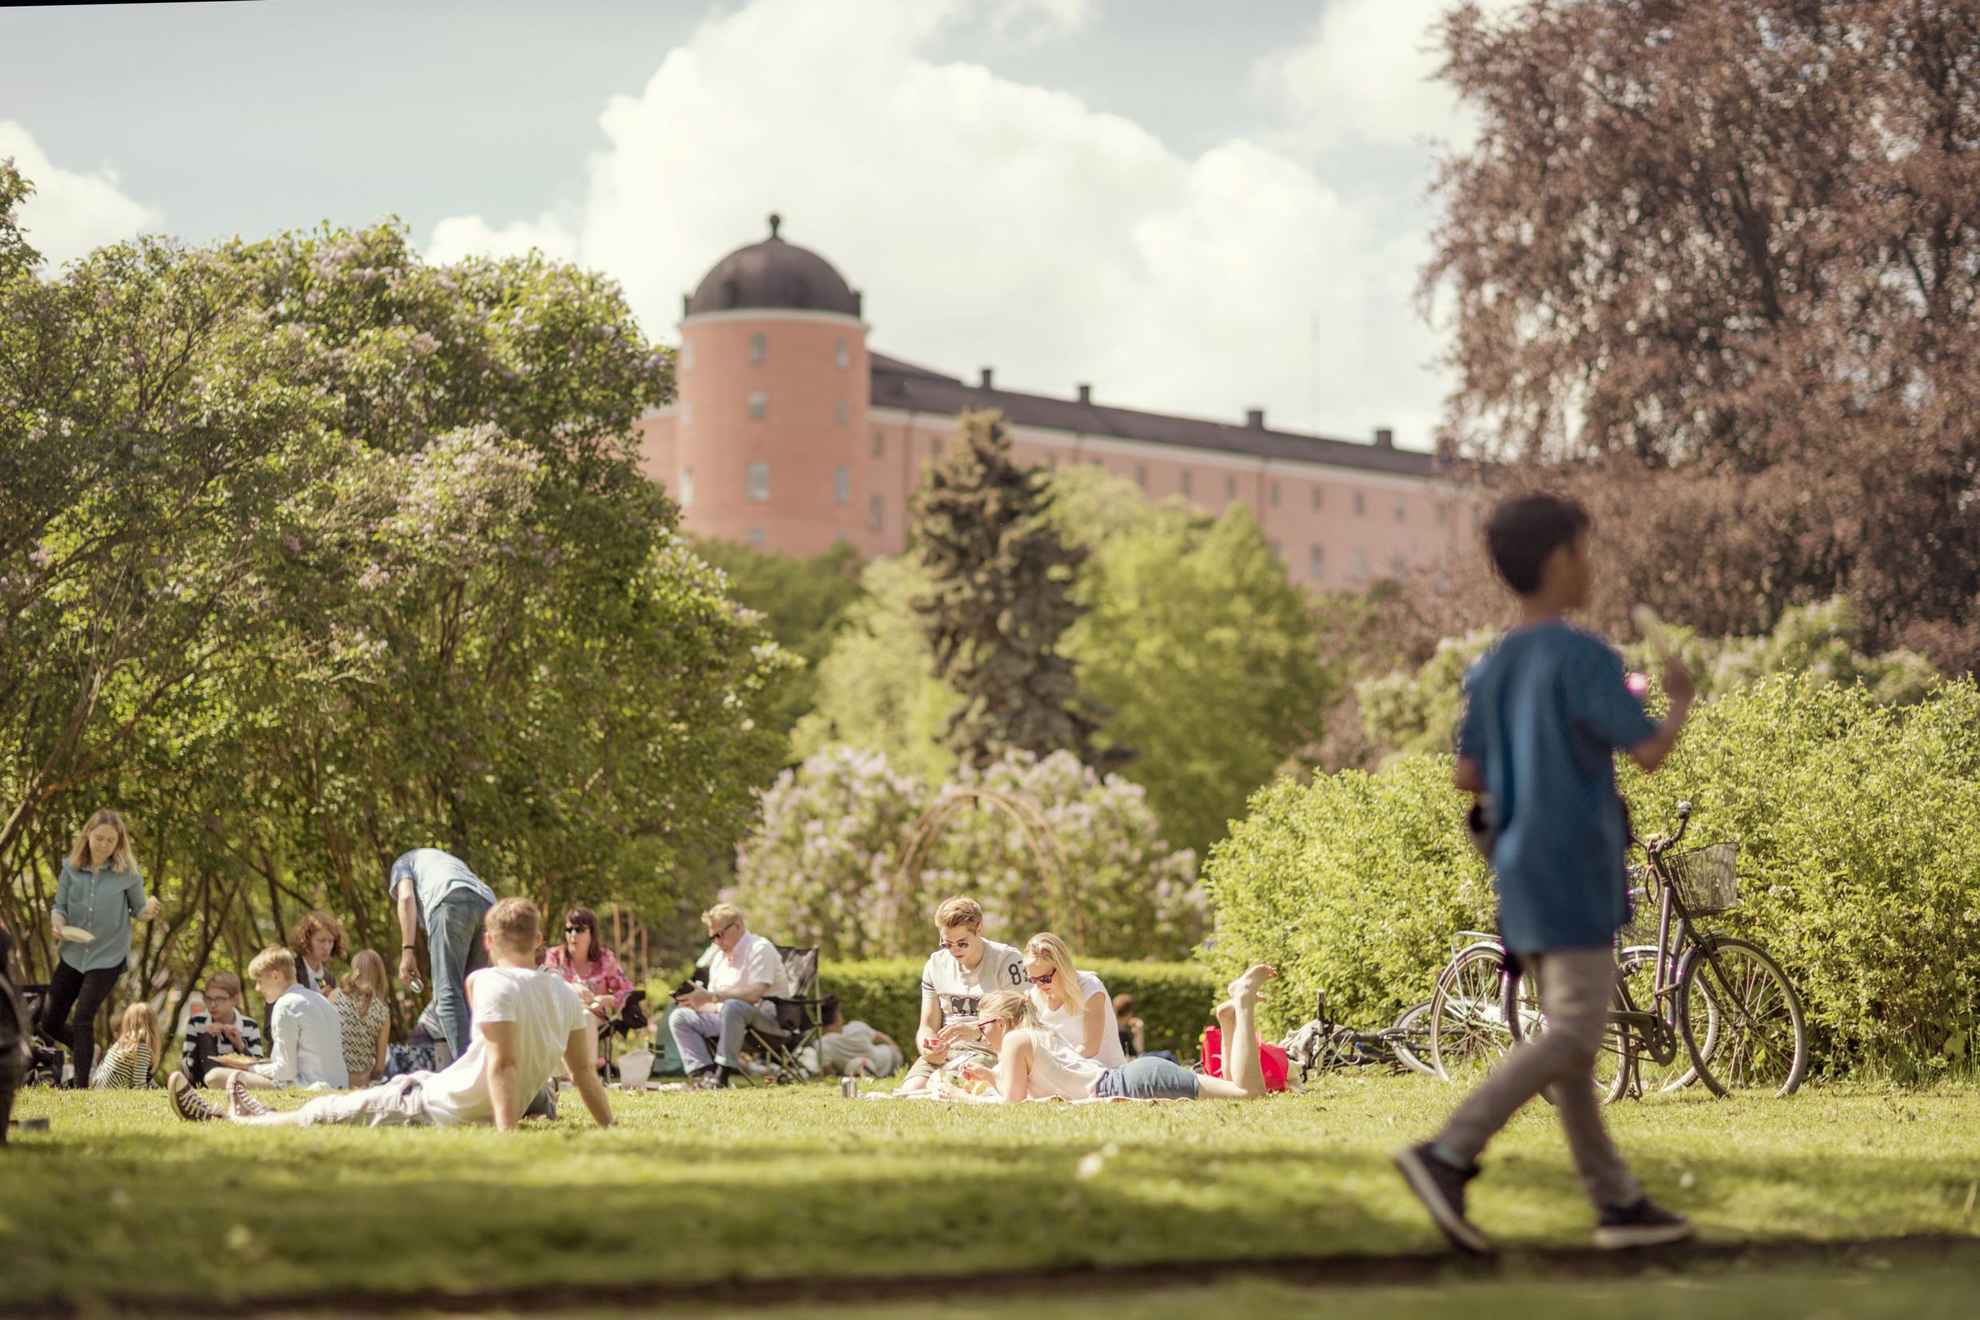 Picknick im Stadtgarten von Uppsala